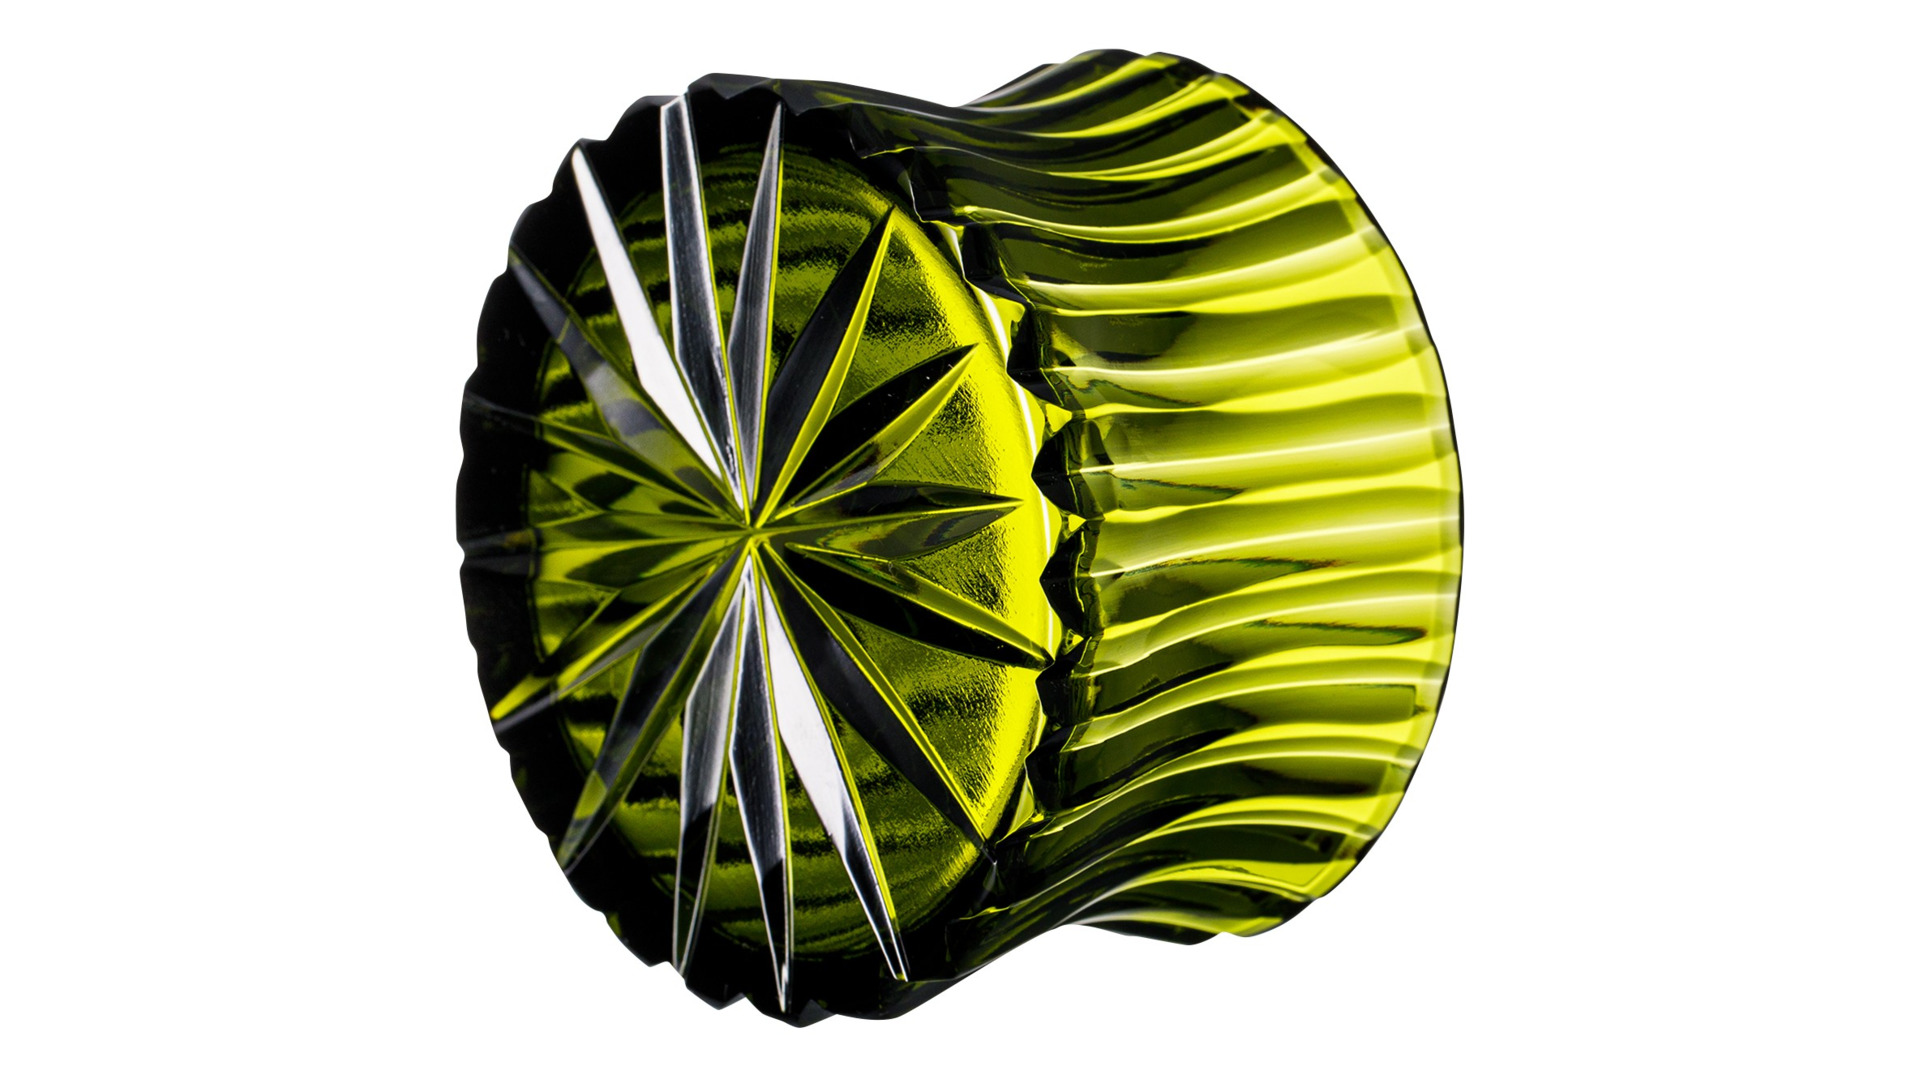 Ваза для конфет ГХЗ Галилей Каскад 9 см, хрусталь, травяной